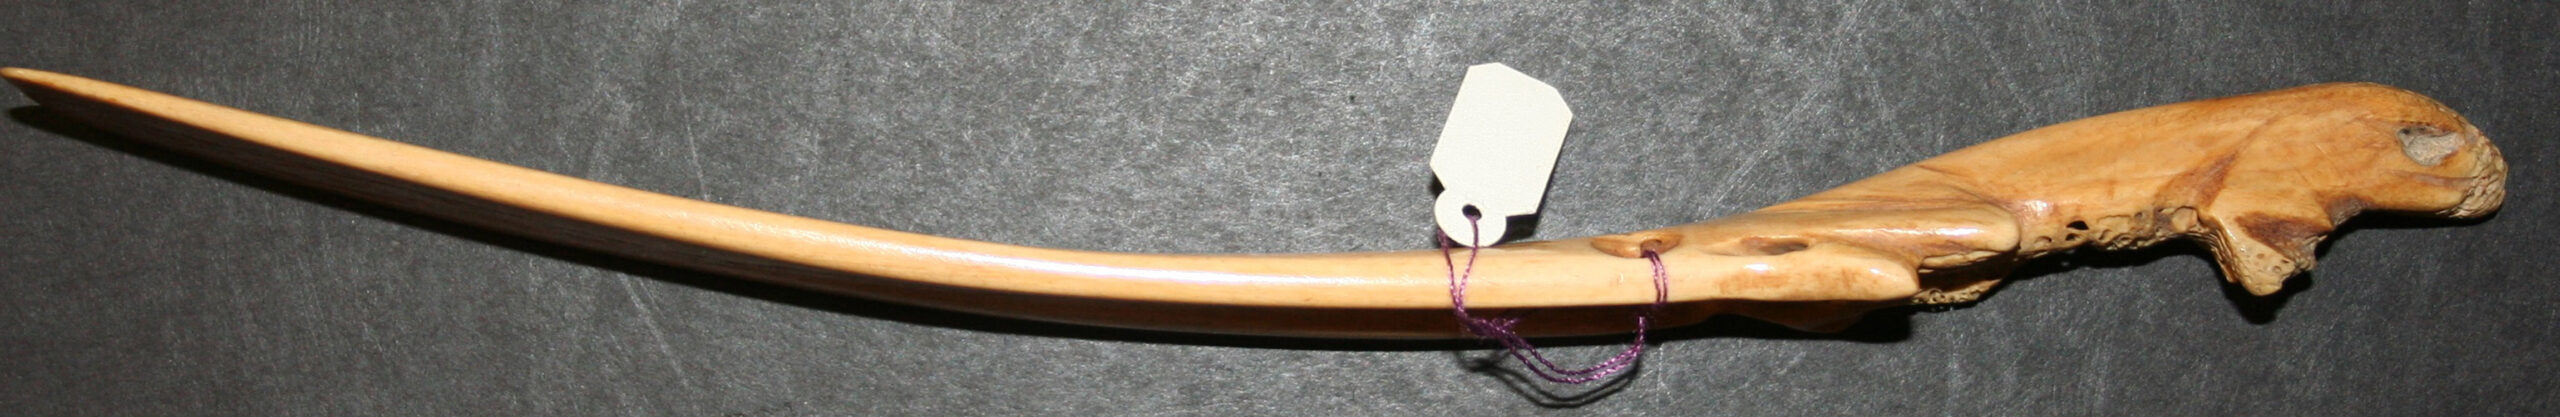 27 Chameleon Knife (or knife handle)